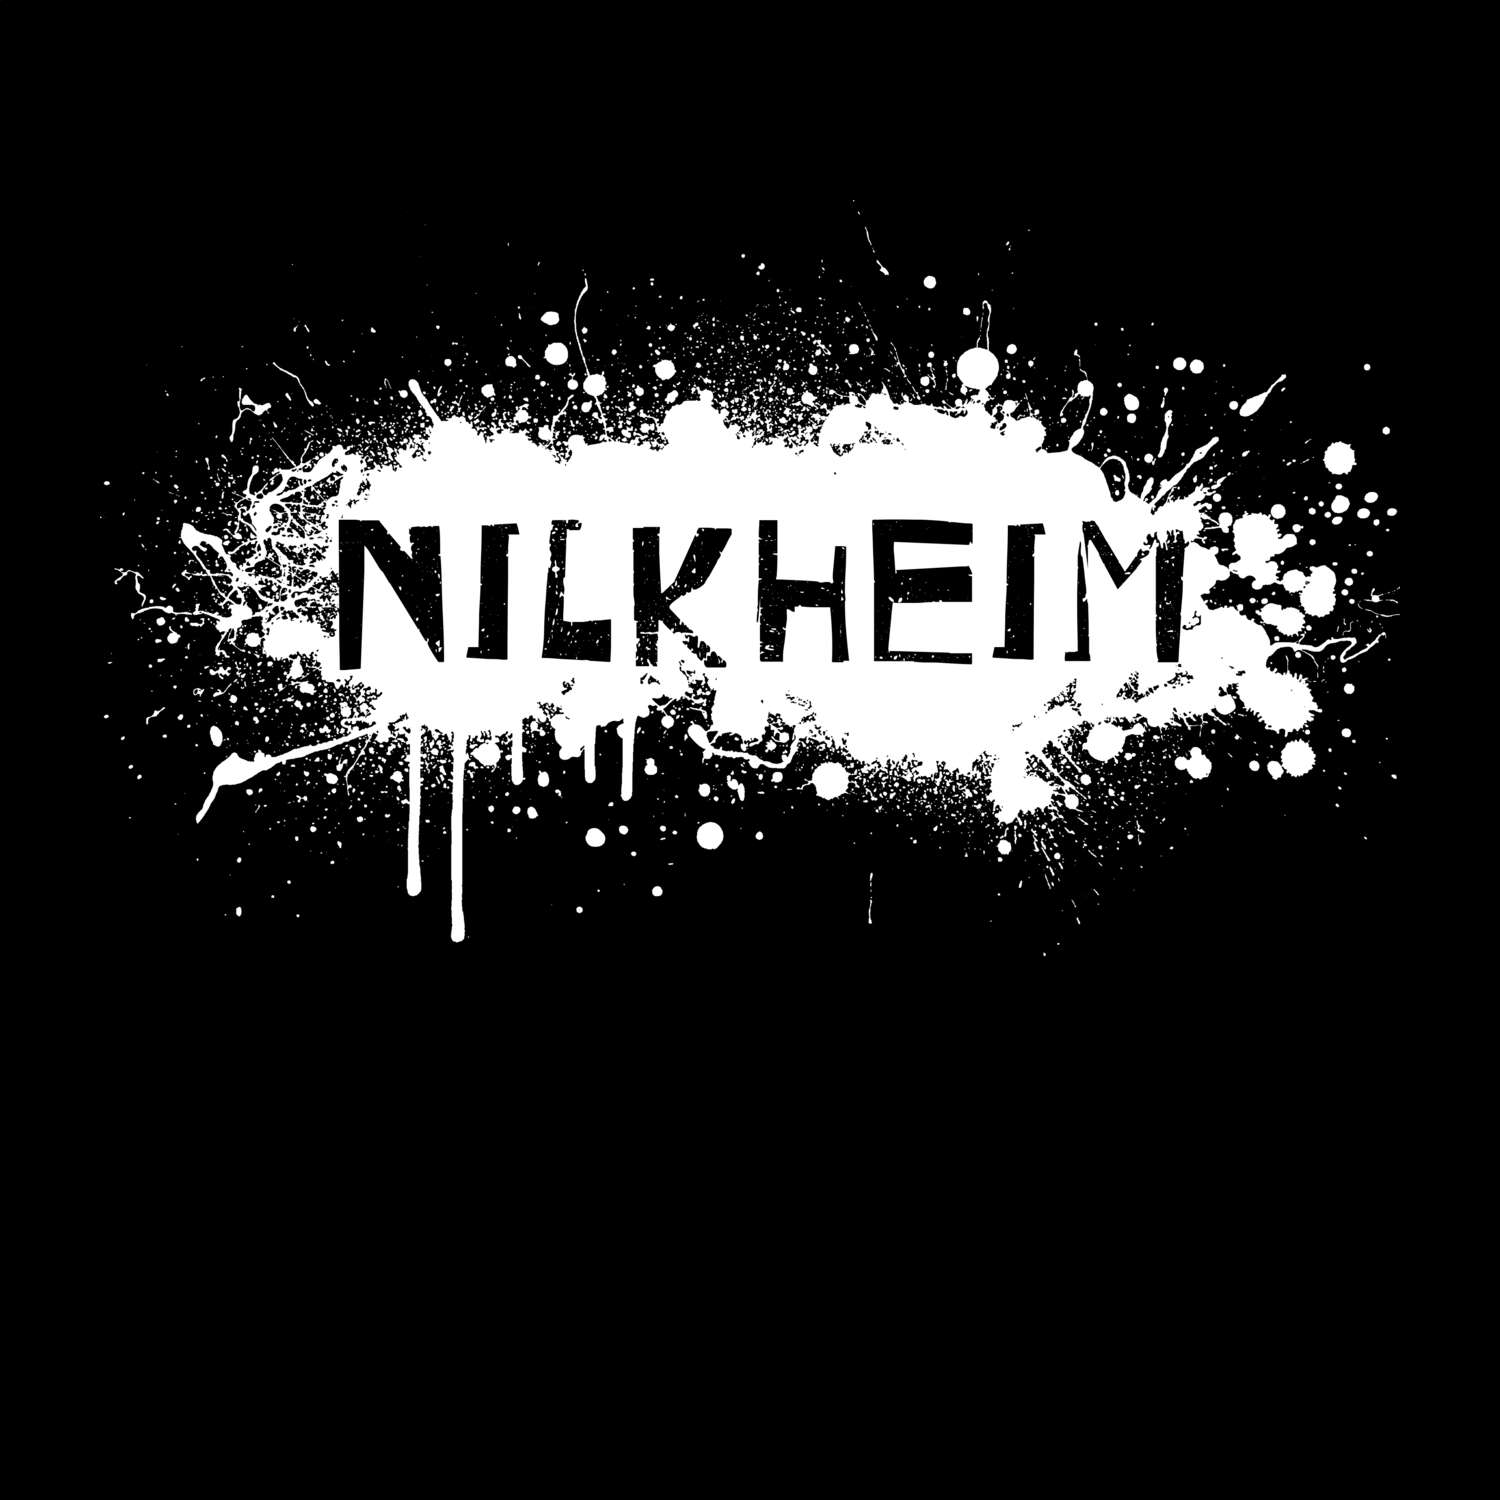 Nilkheim T-Shirt »Paint Splash Punk«